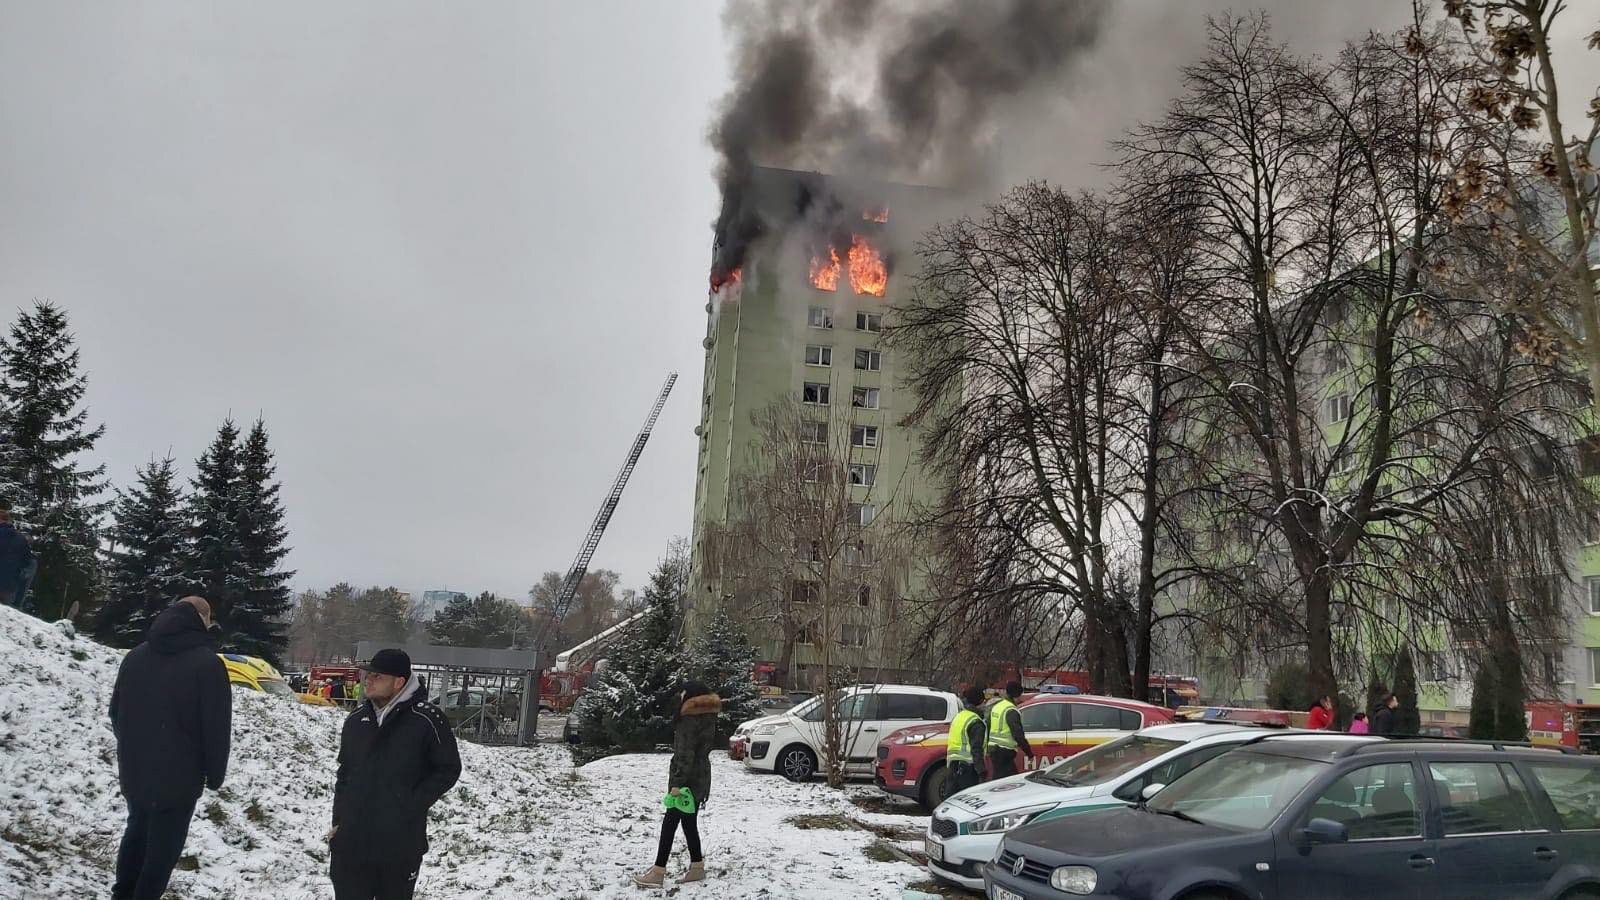 Toda a metade superior do edifício está em chamas e os três andares superiores estão totalmente destruídos